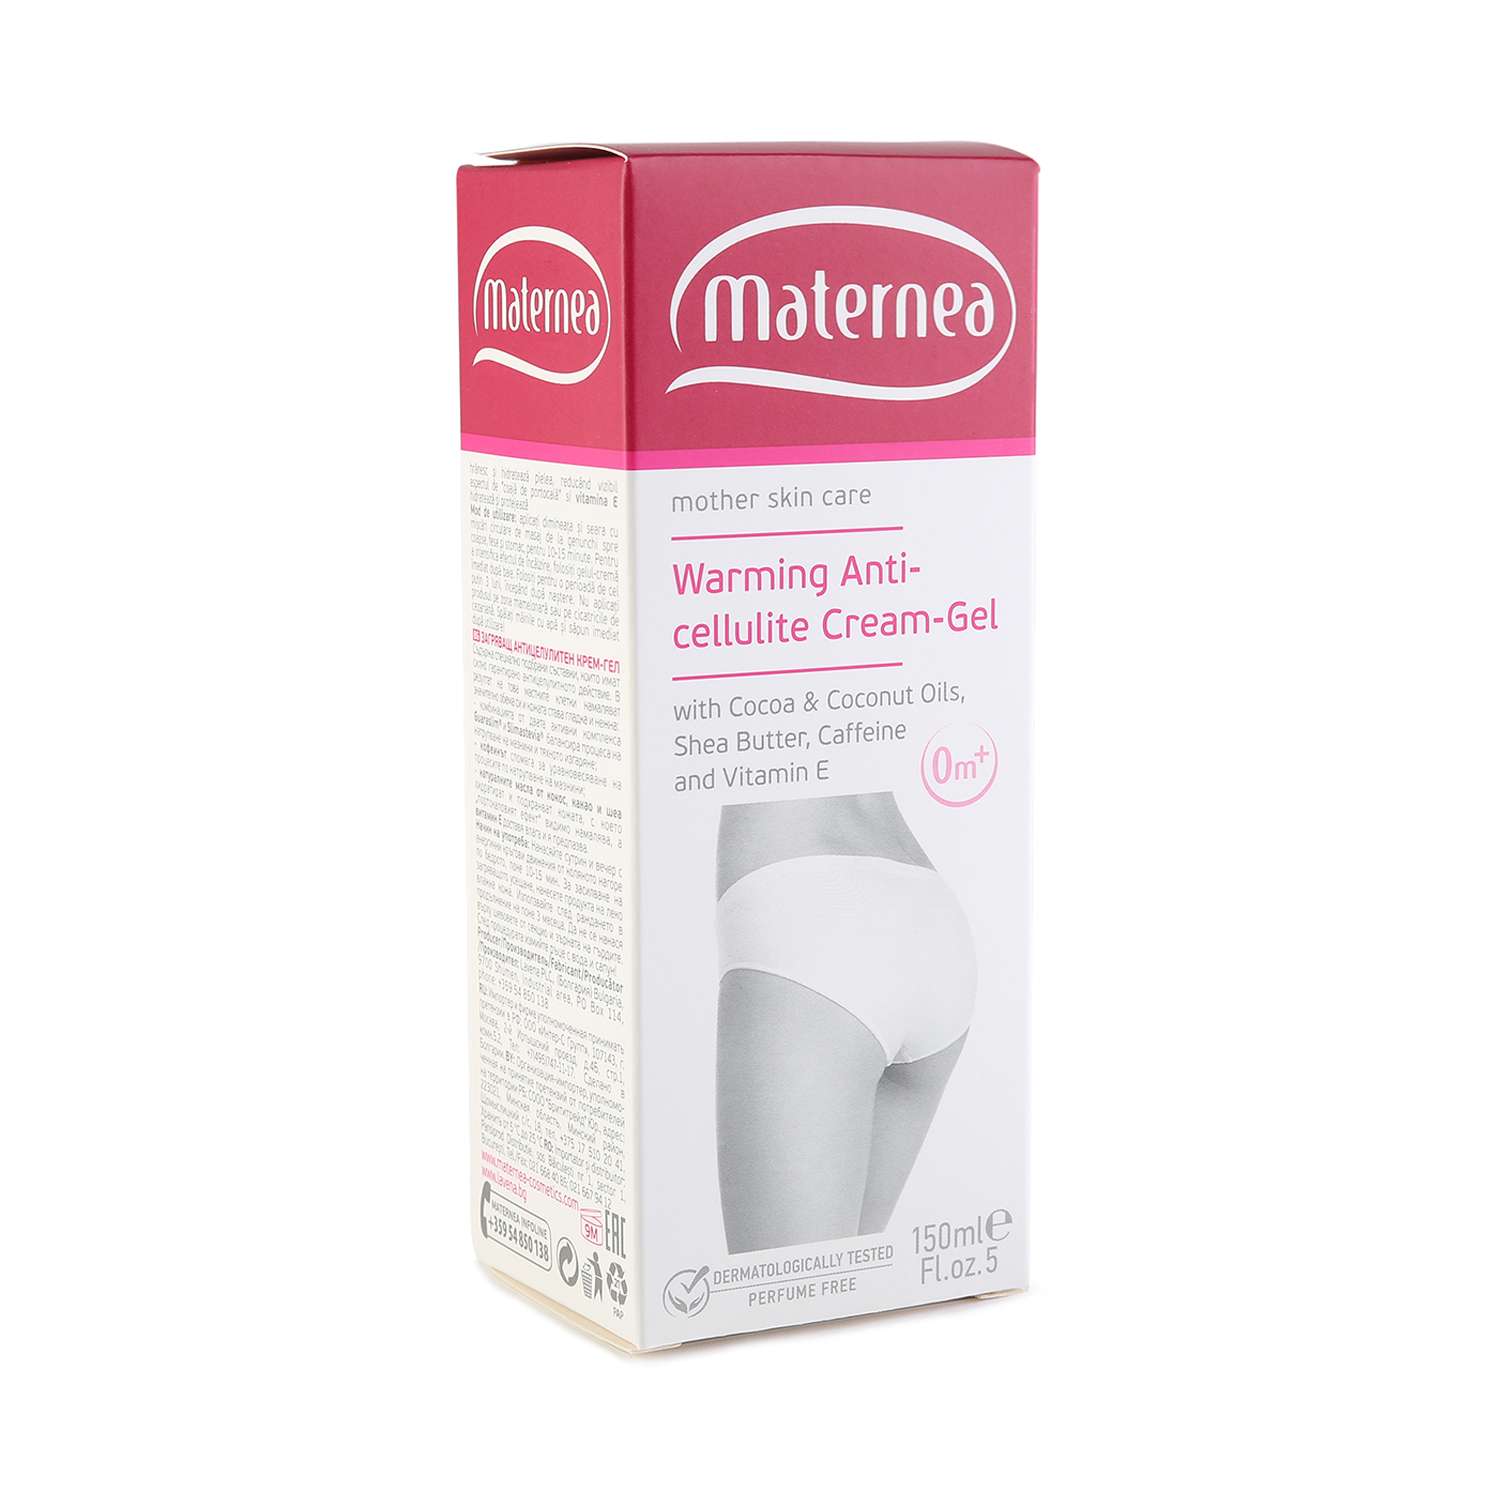 Антицеллюлитный крем-гель MATERNEA Warming Anti-Cellulite Cream-Gel - фото 2